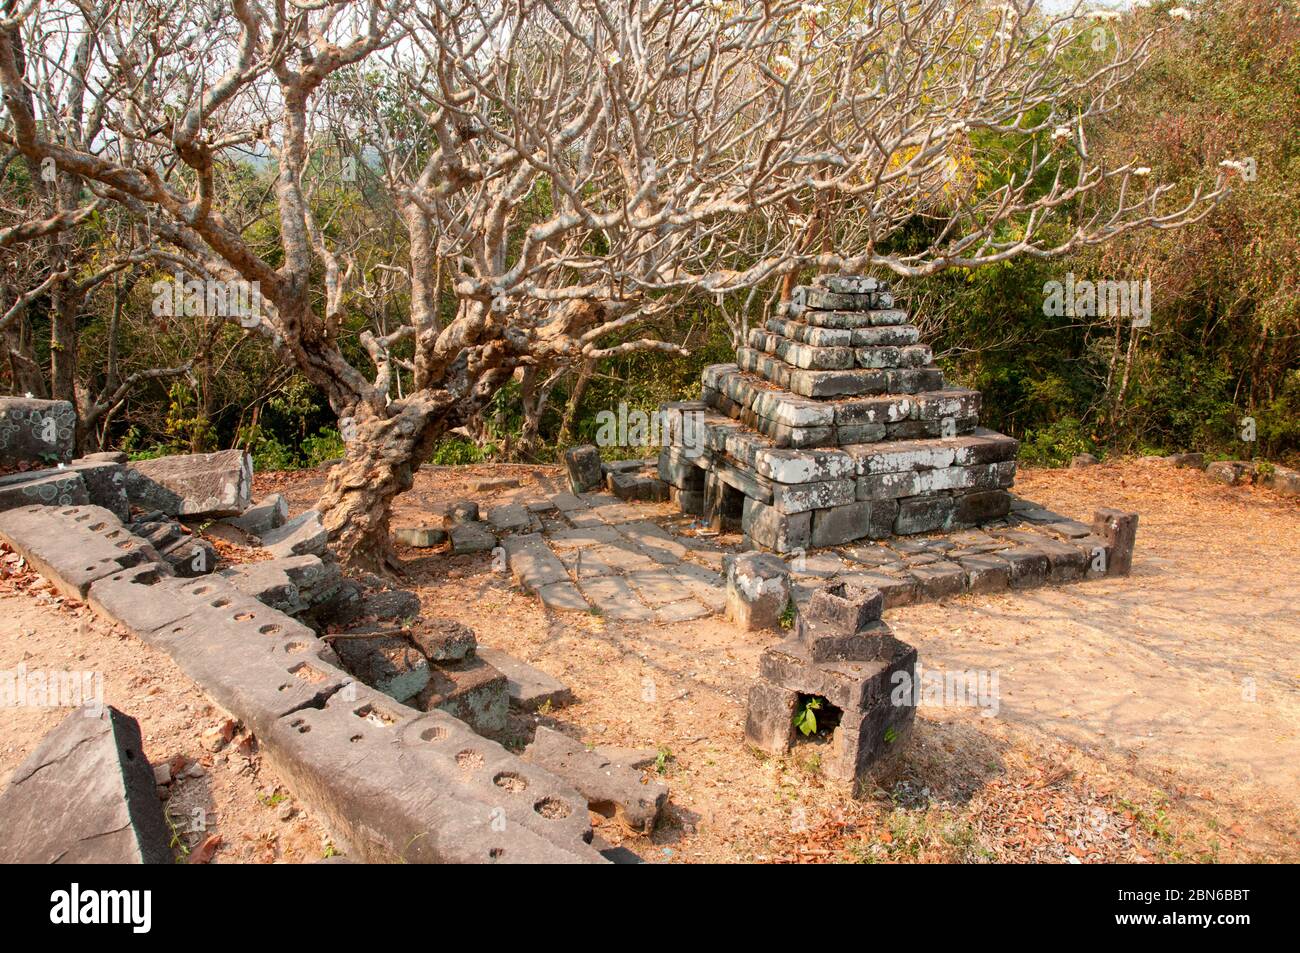 Kambodscha: Ein kleiner Chedi am Anfang des 11. Jahrhunderts auf dem Hügel gelegenen Khmer Tempel, Chau Srei Vibol (auch Wat Trak genannt), in der Nähe von Angkor. Die unrestaurierte Hindu t Stockfoto